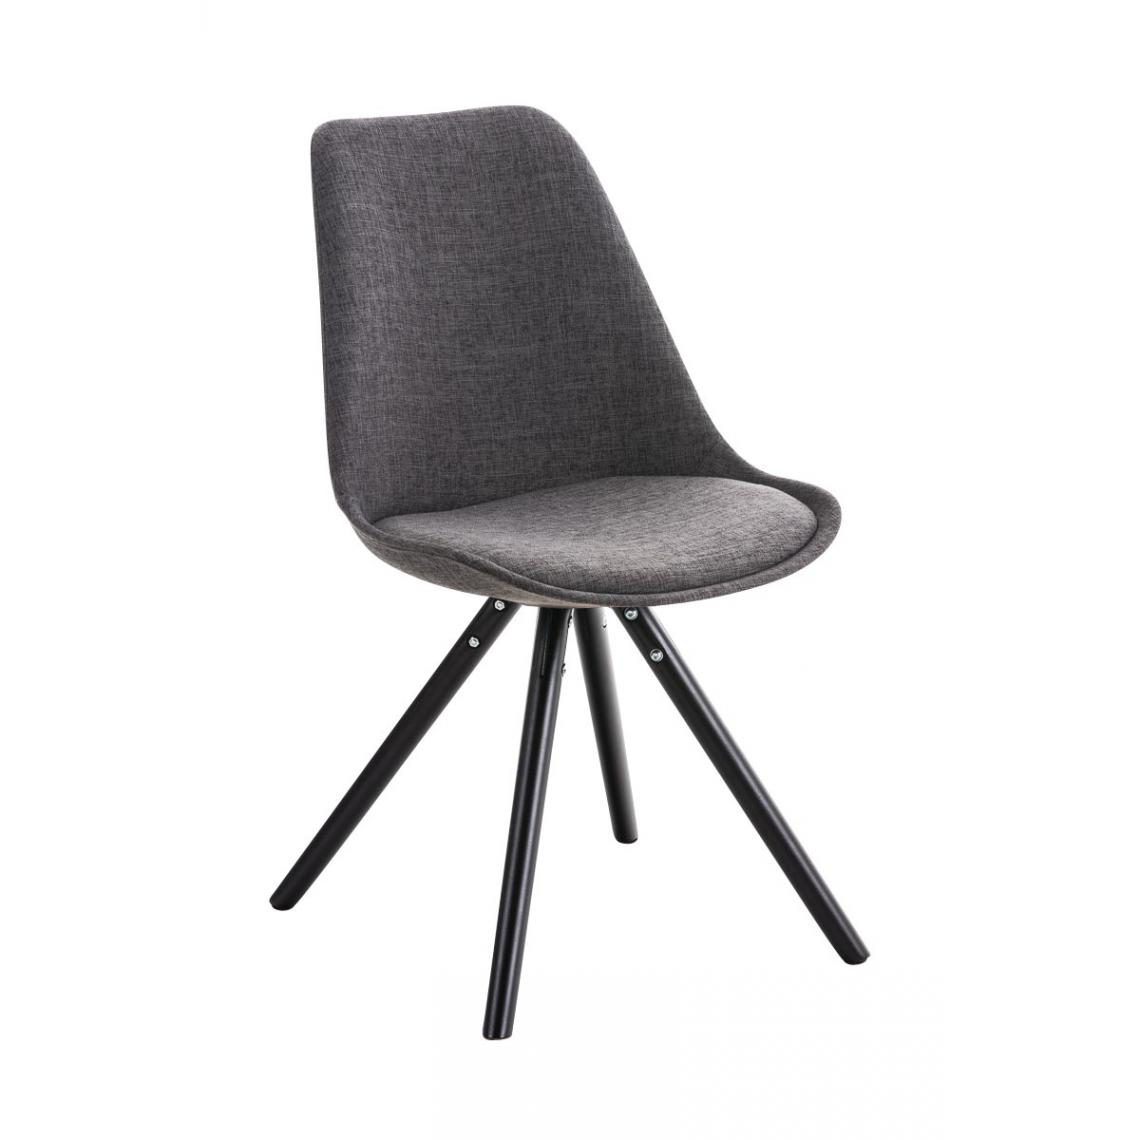 Icaverne - sublime Chaise ronde Manille noire couleur gris clair - Chaises